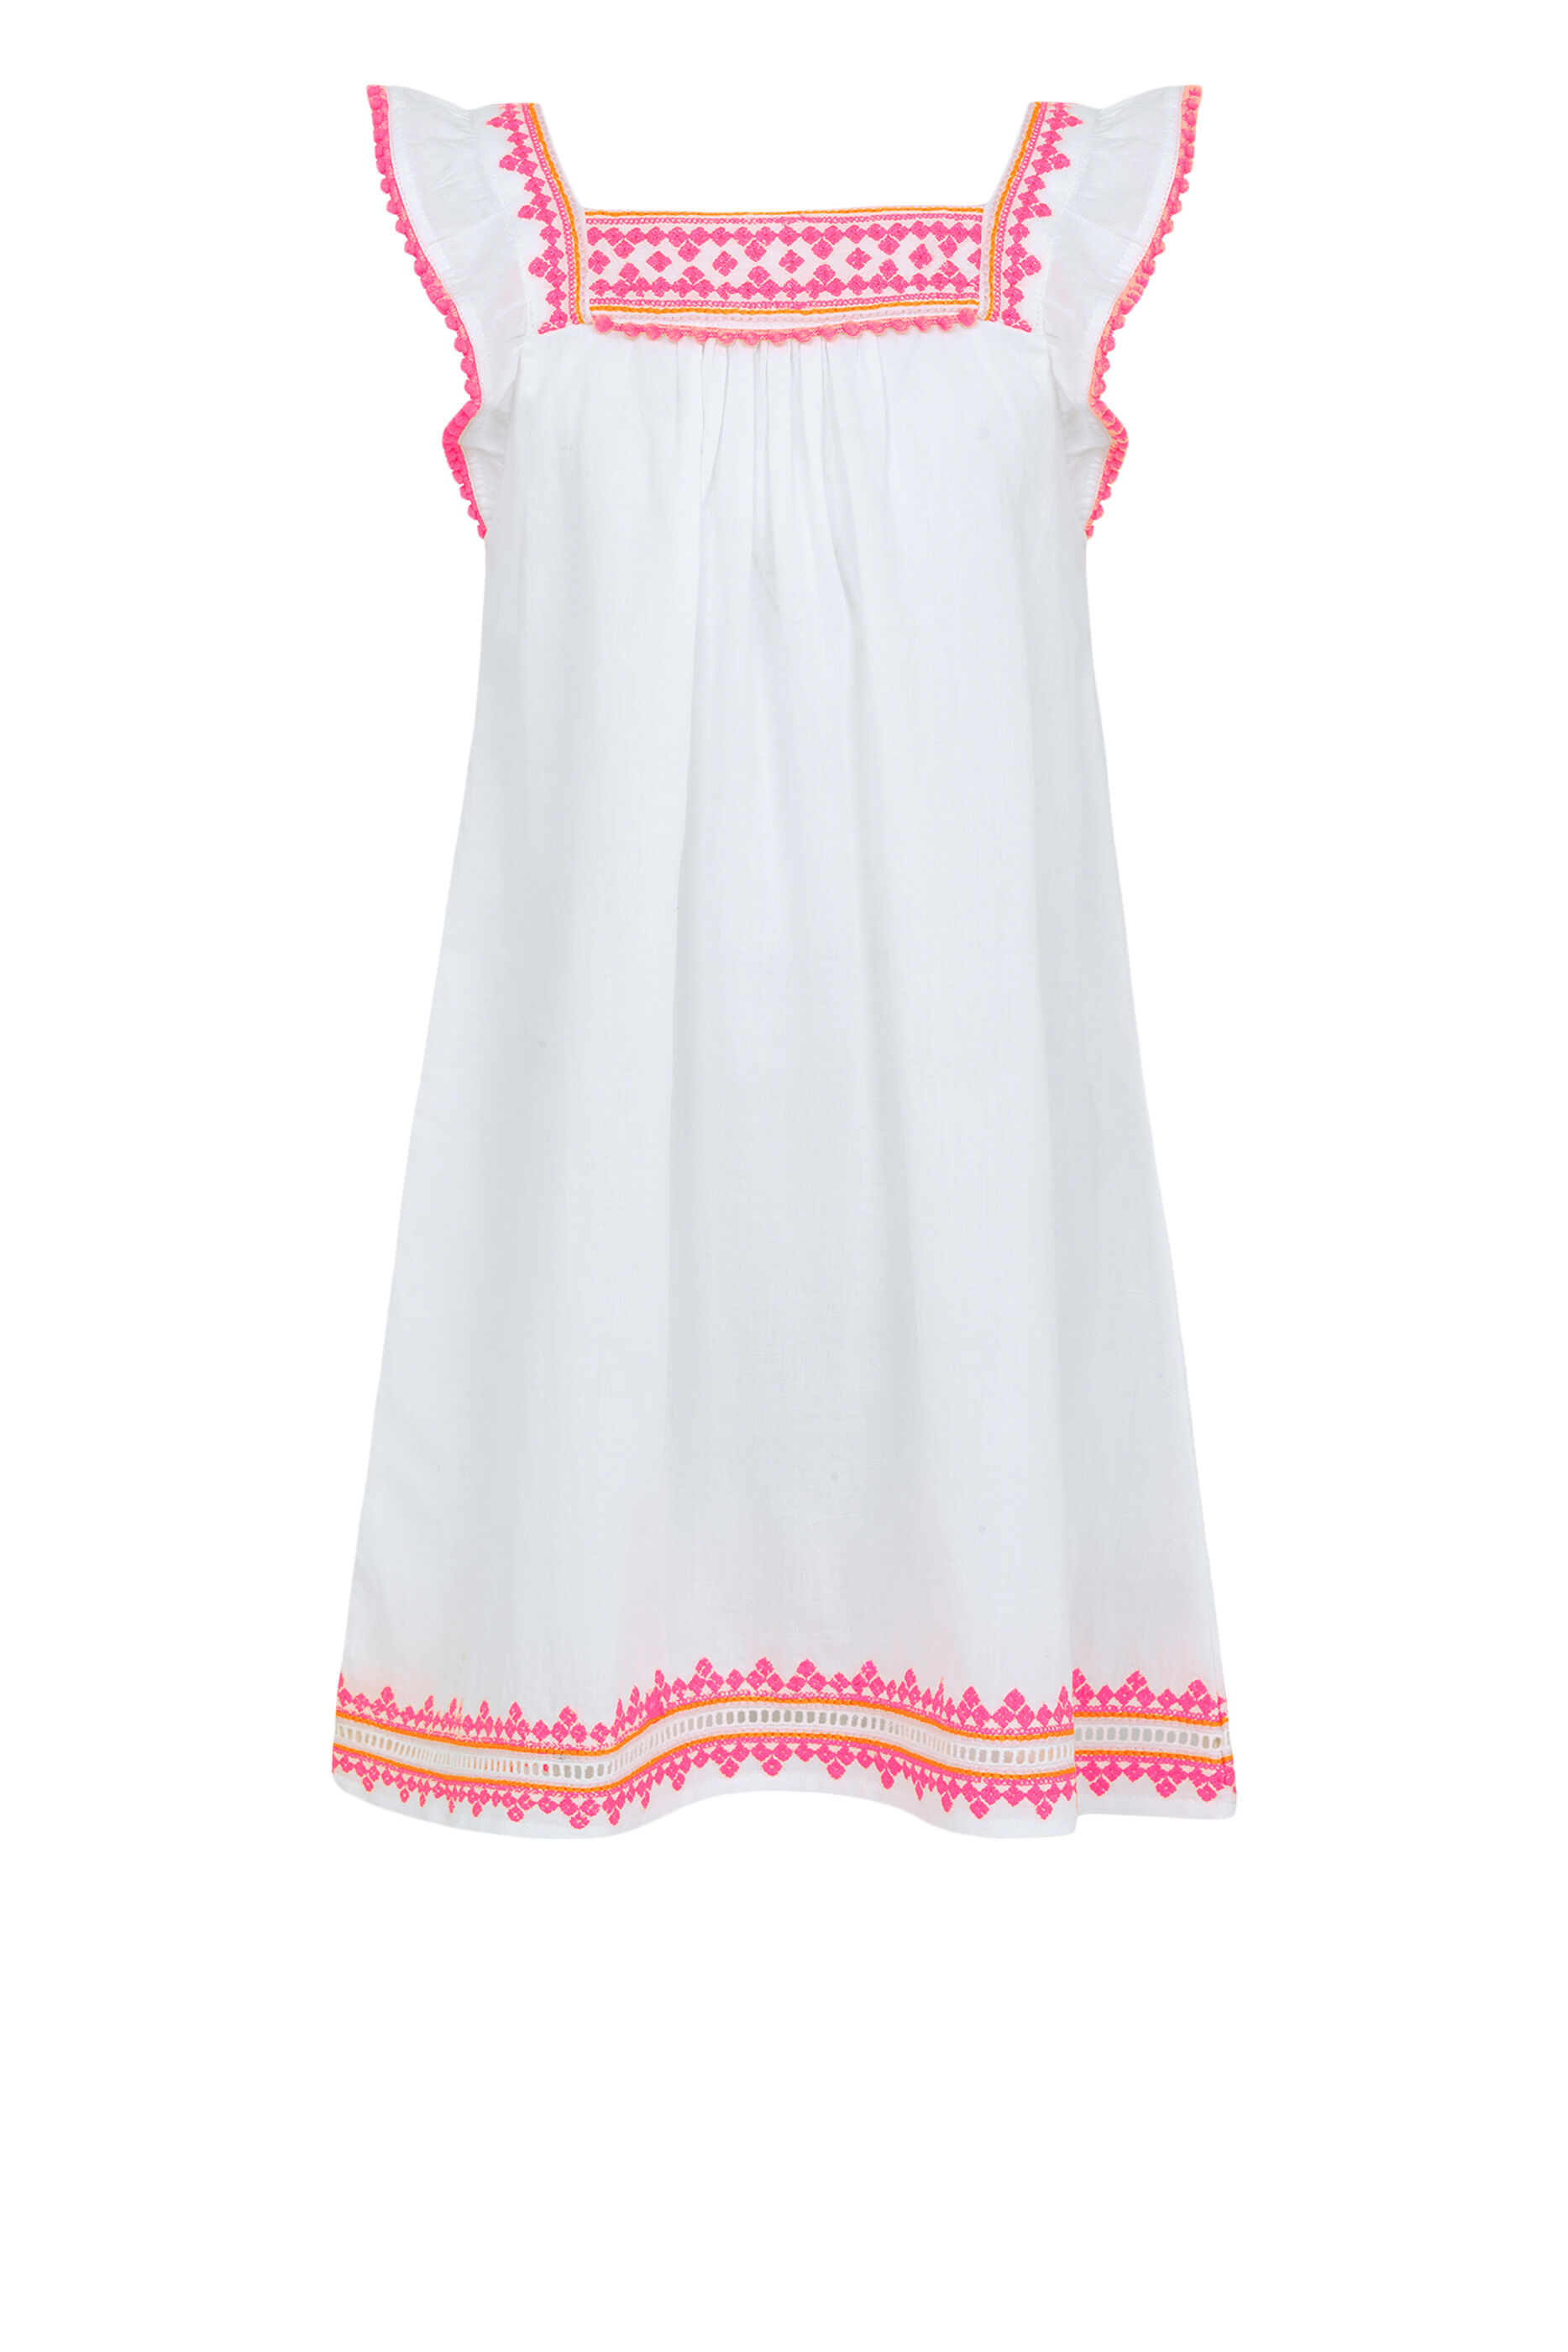 Buy Sunuva Embroidered Dress - Kids for 